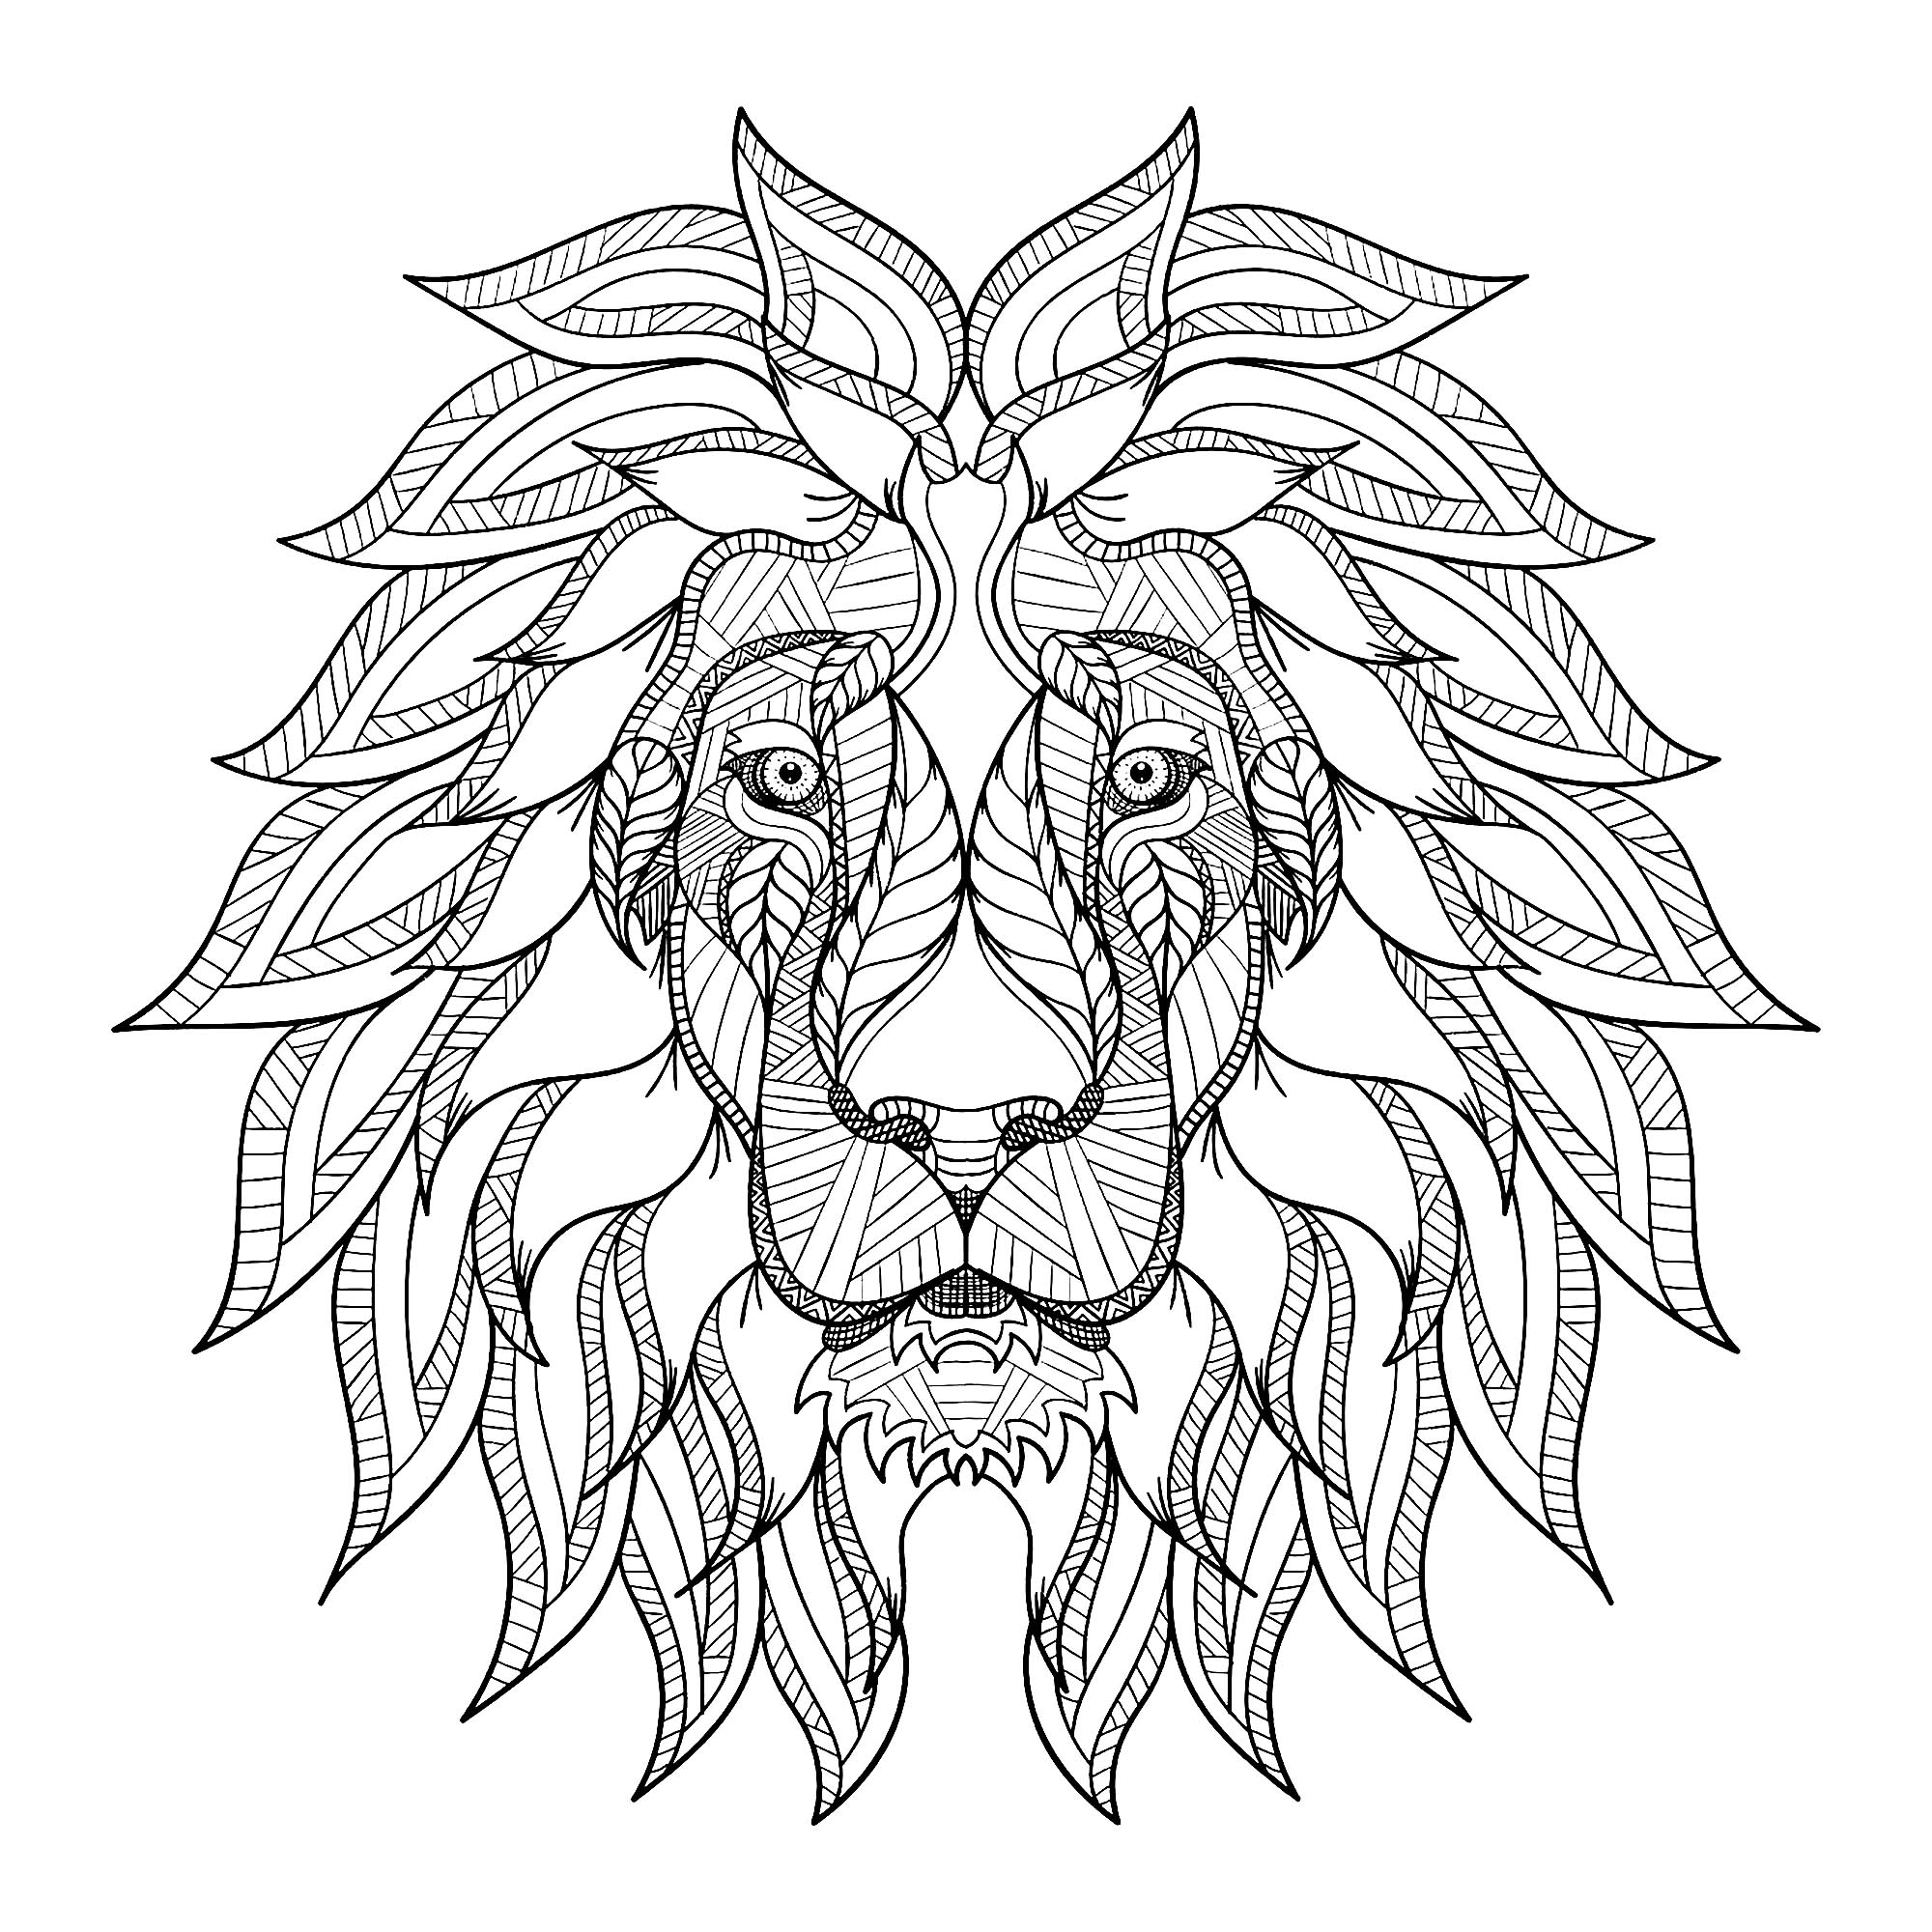 Disegni da colorare per adulti : Lions - 1